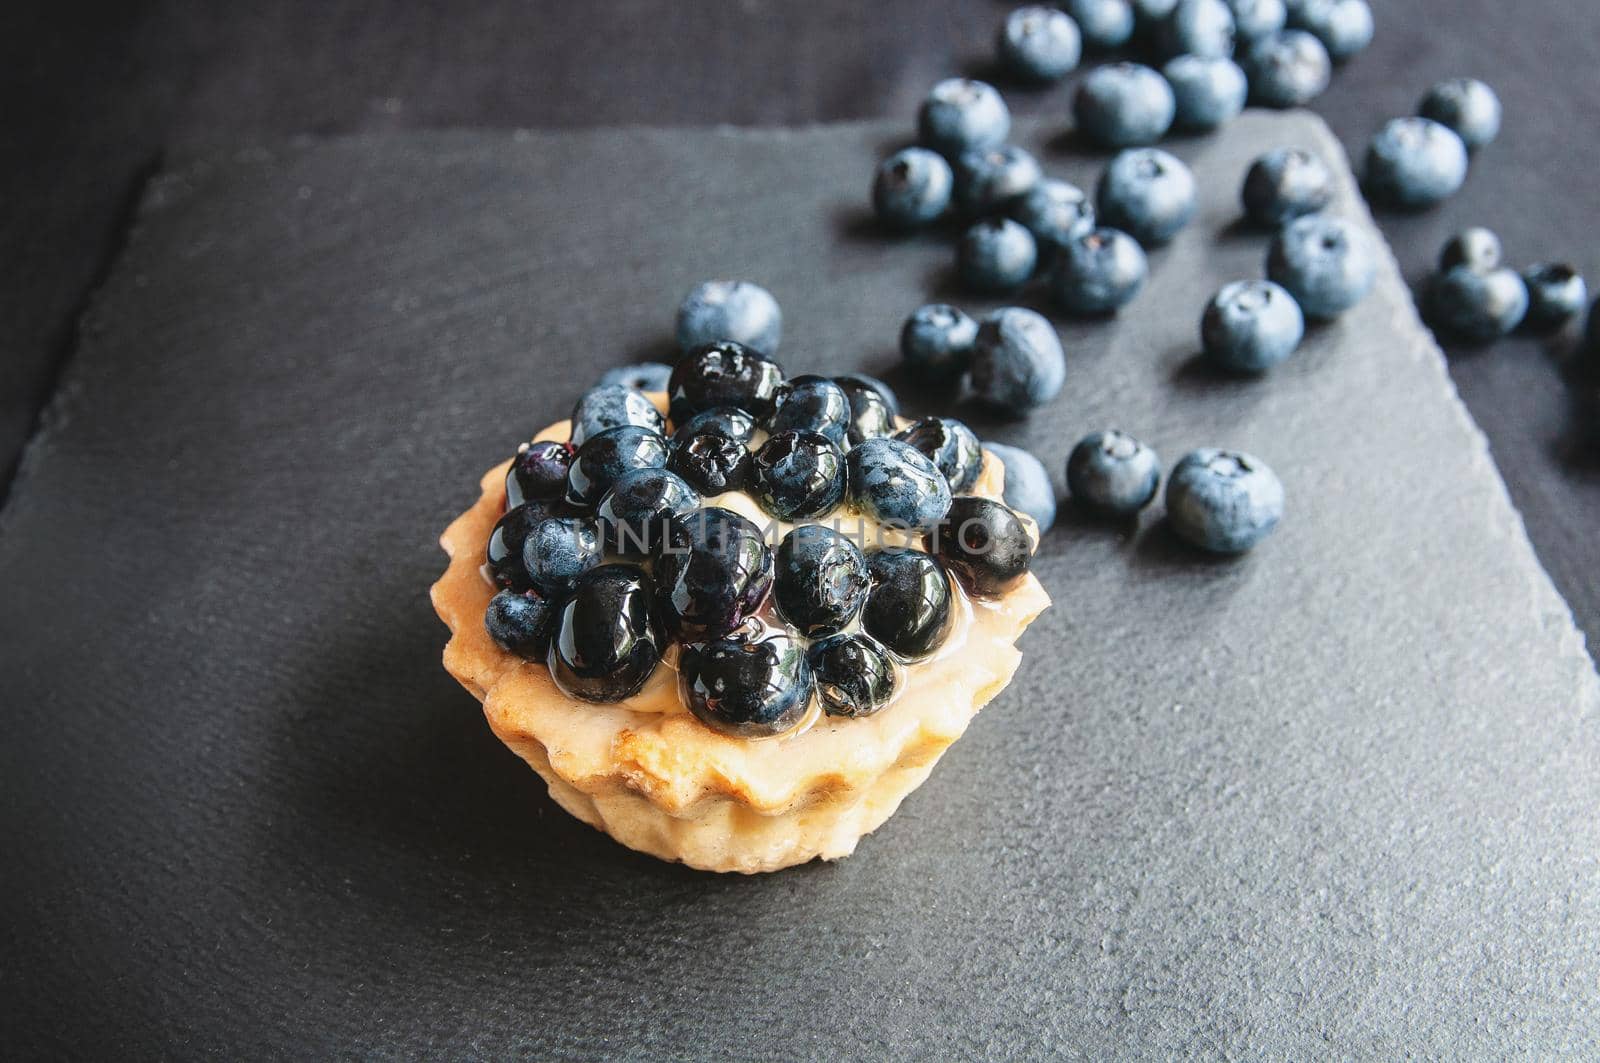 Blueberry tart on a dark background. by ozornina